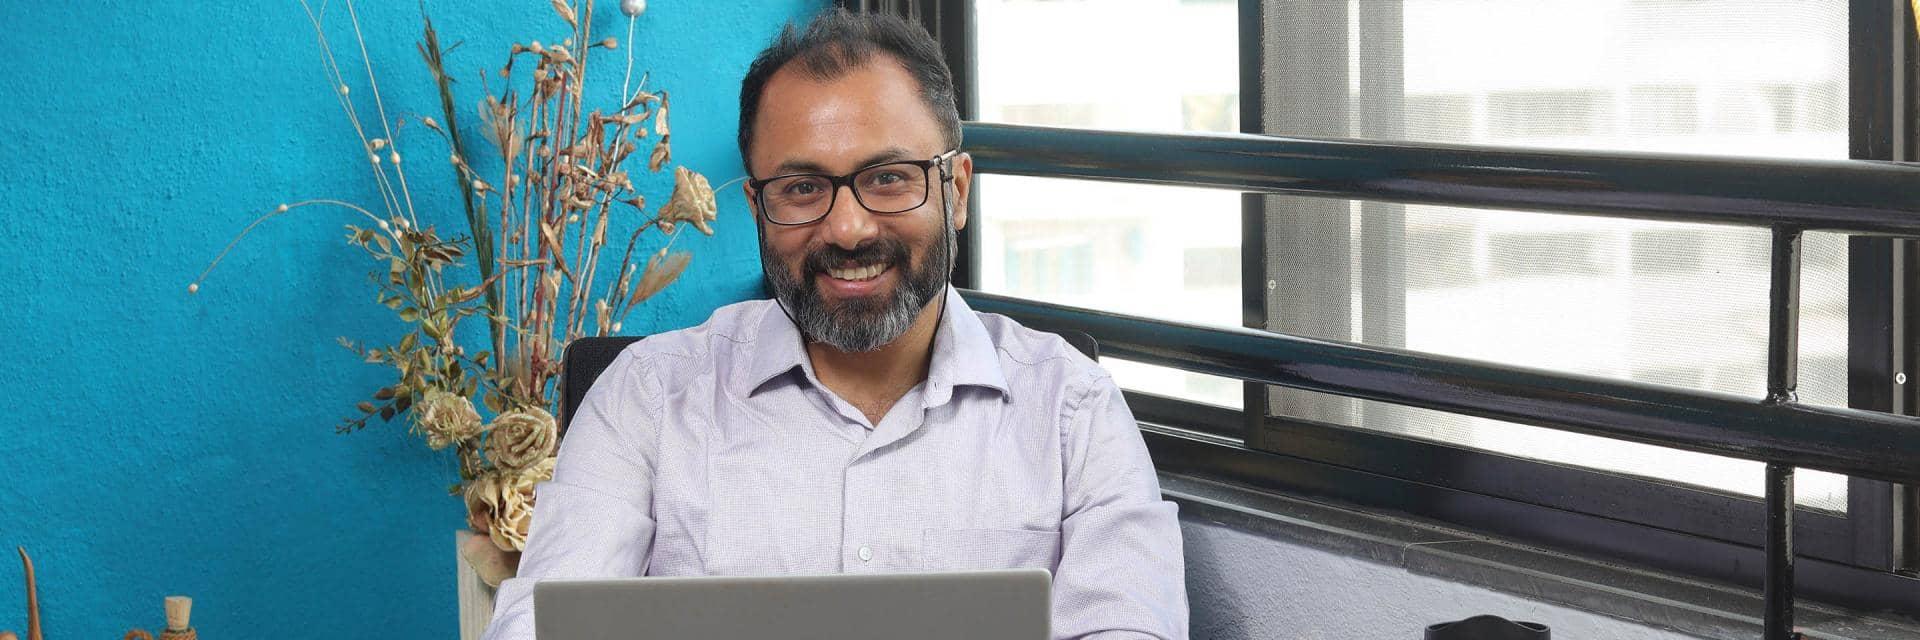 Satyaki Basu, Barclays Data Architect, working at his desk.